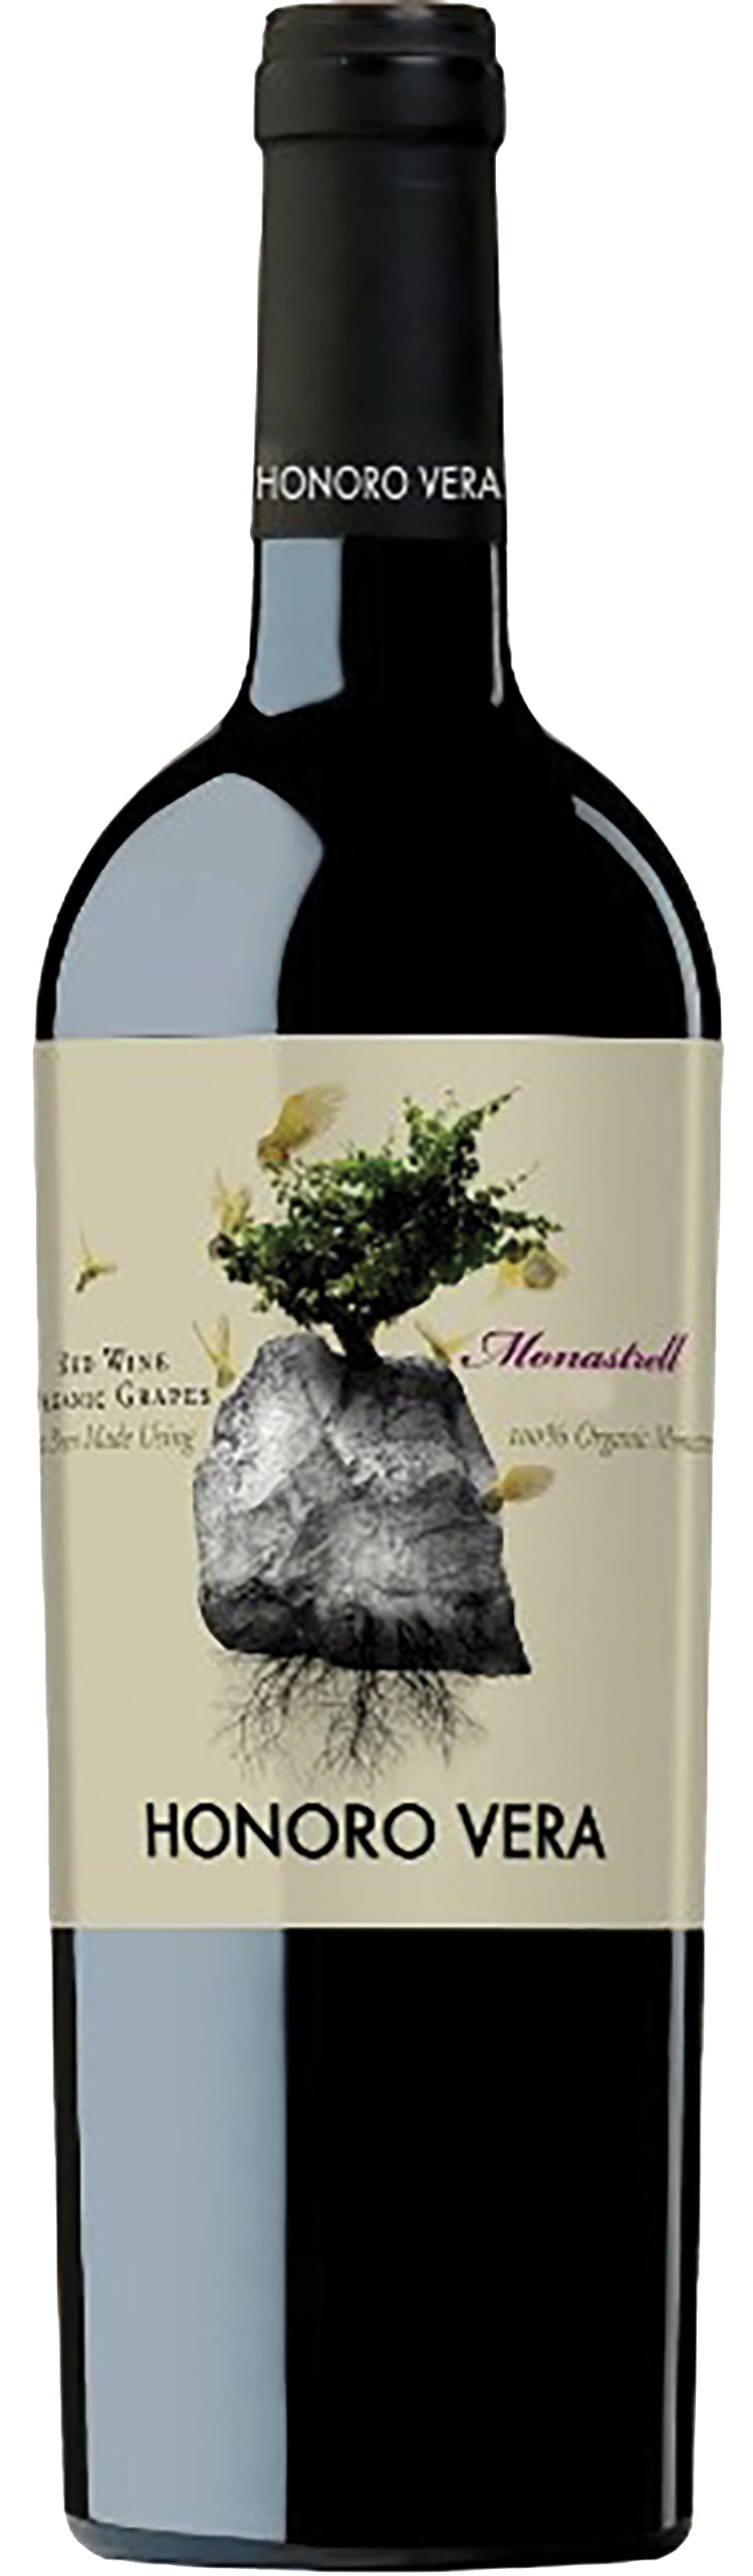 Tarima Hill Monastrell 2018 – Del Duero Wines